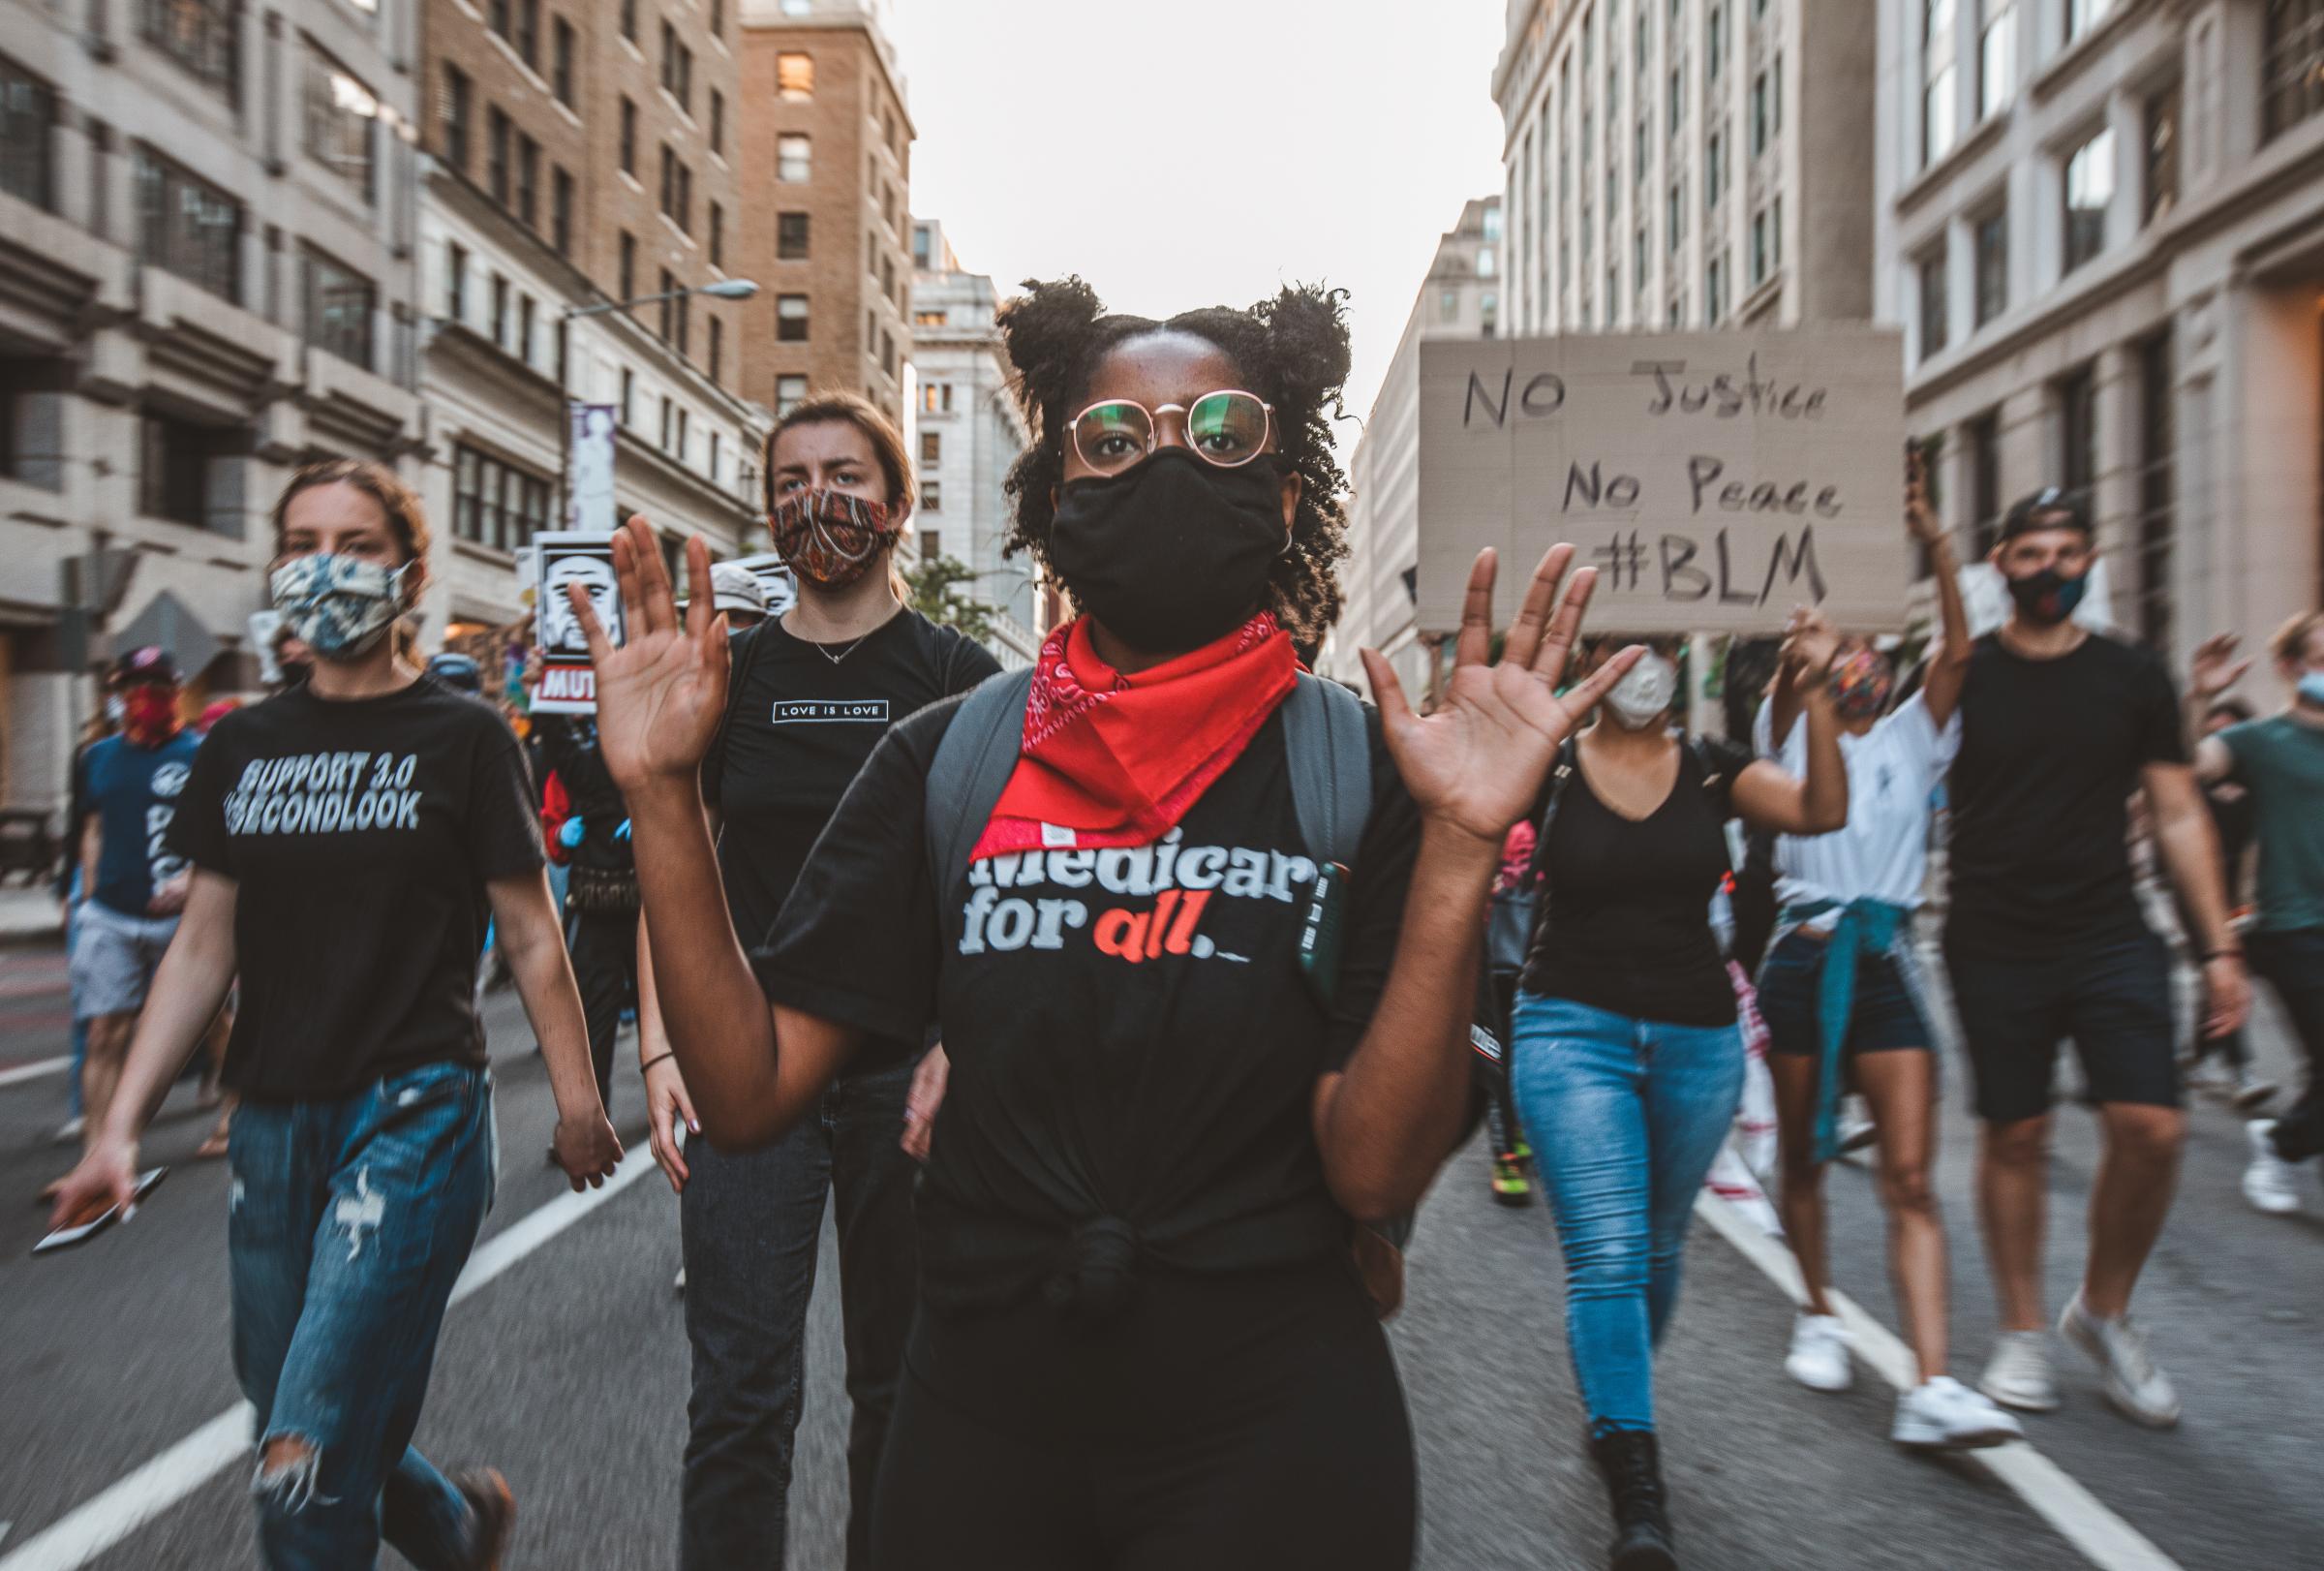 Black Lives Matter Protests in Washington, DC